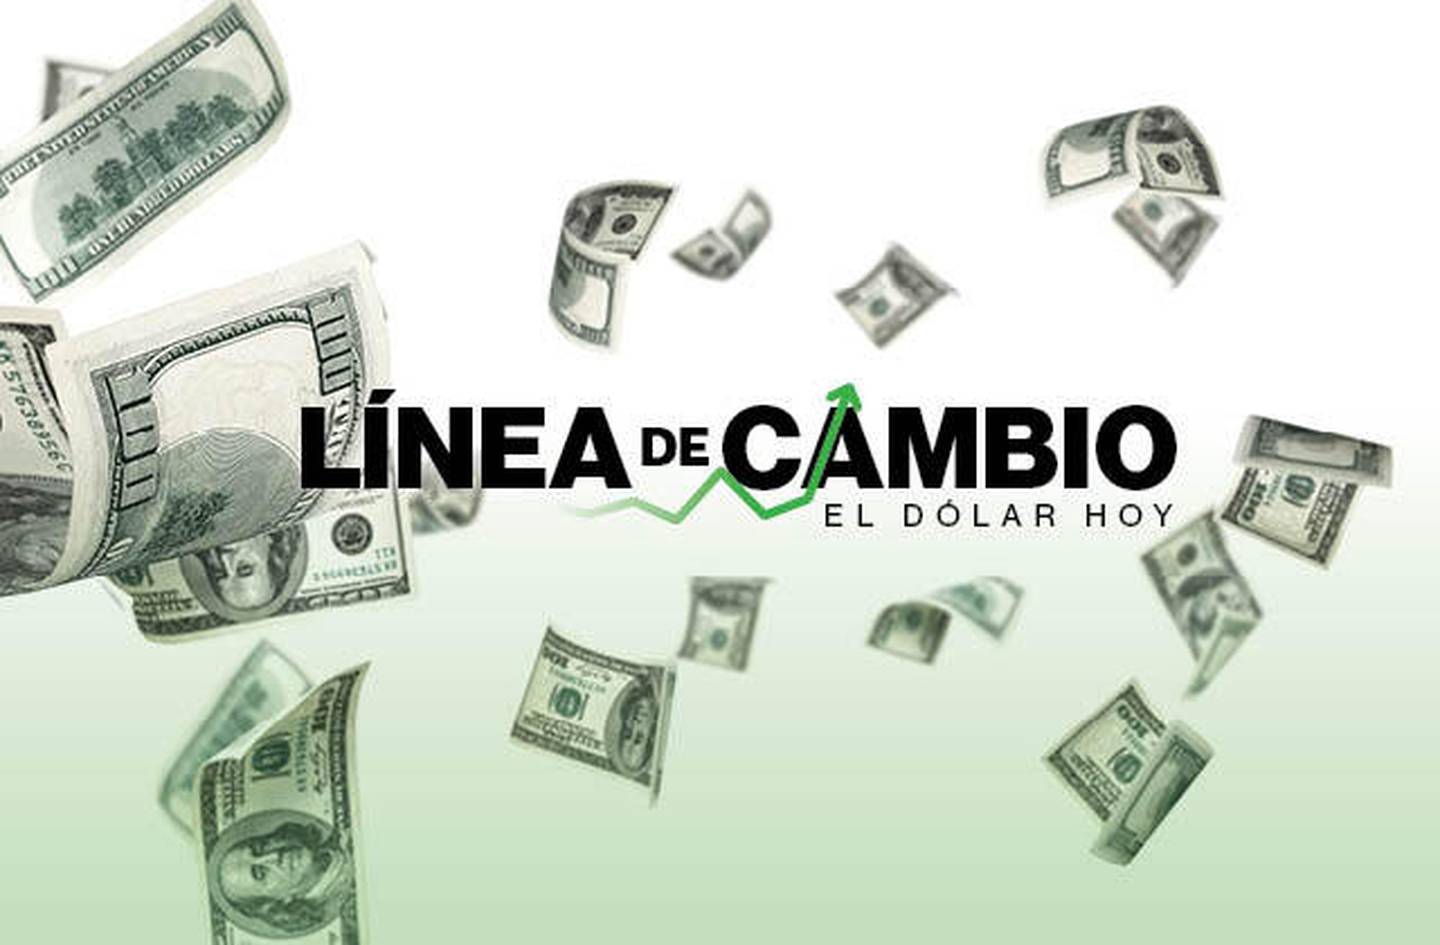 Dólar hoy: Sol peruano sube y supera eventos locales ante aumento de tasa de interés